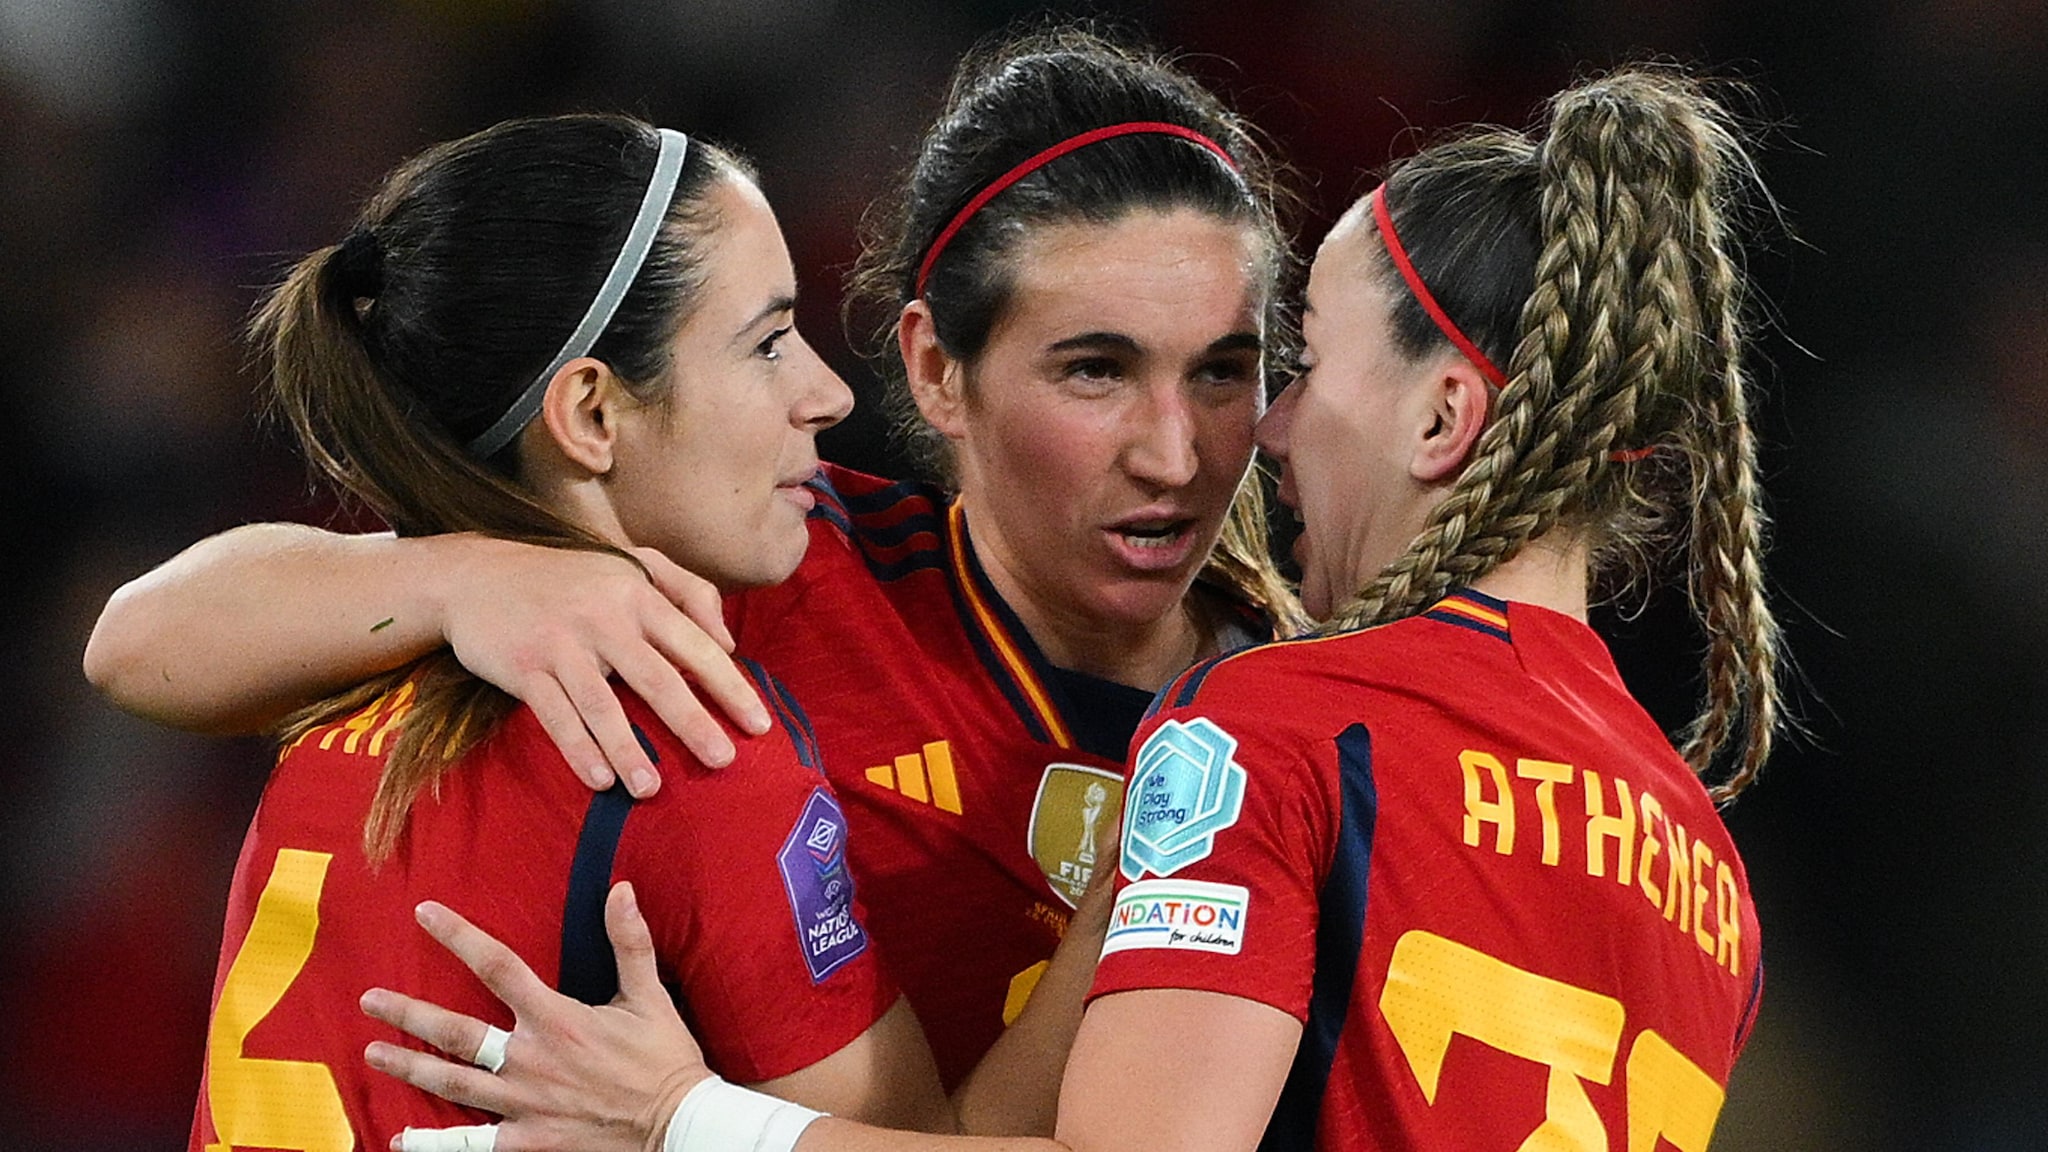 En la zona: España 2-0 Francia Análisis de rendimiento |  Liga de Naciones Femenina de la UEFA